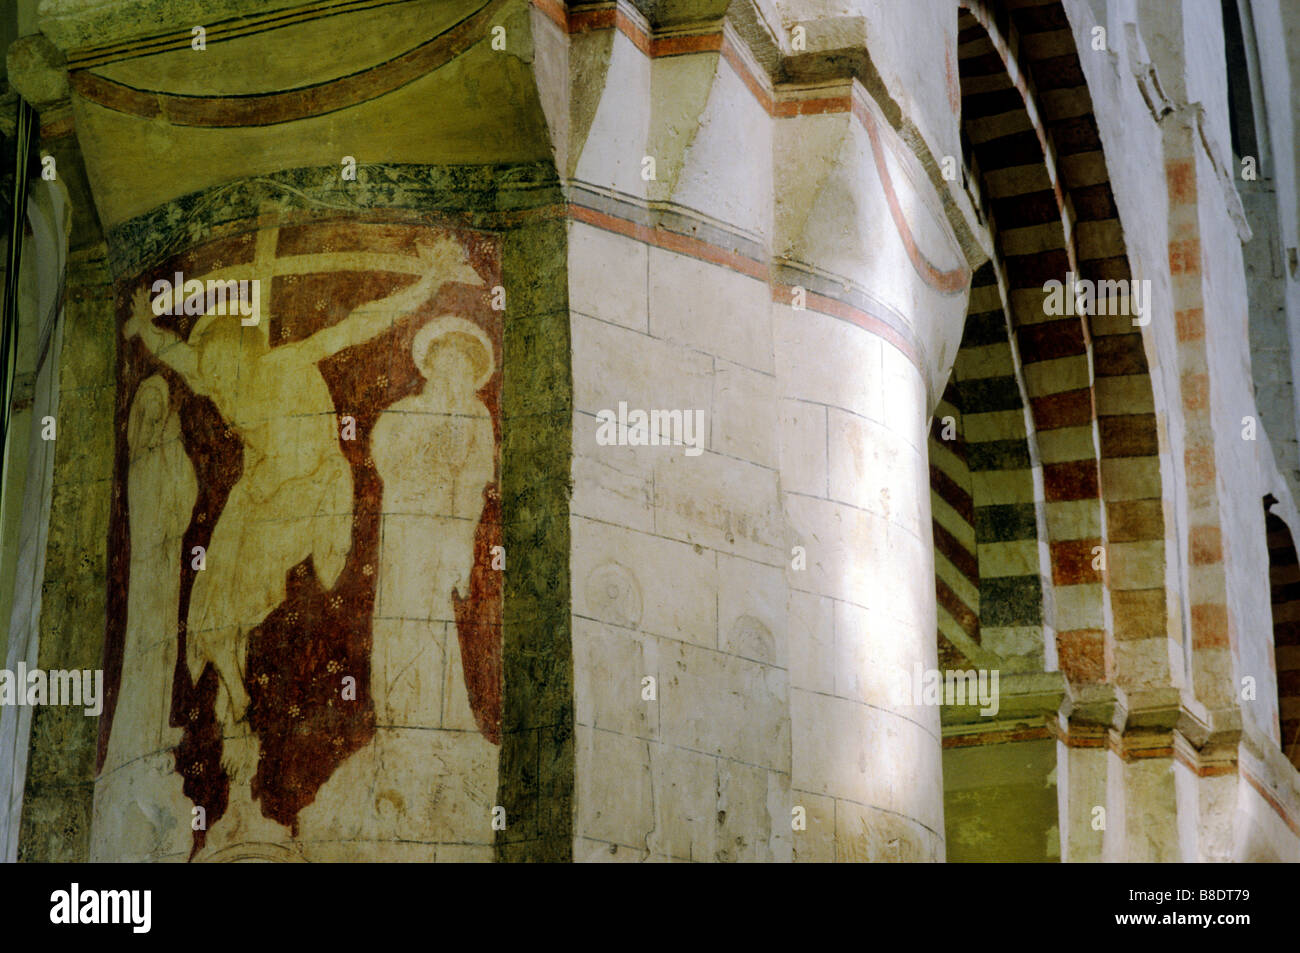 St Albans Kathedrale Norman Kirchenschiff innen mittelalterlicher Wandmalerei Kreuzigung romanische Säule Pier Hertfordshire England UK Bogen Stockfoto